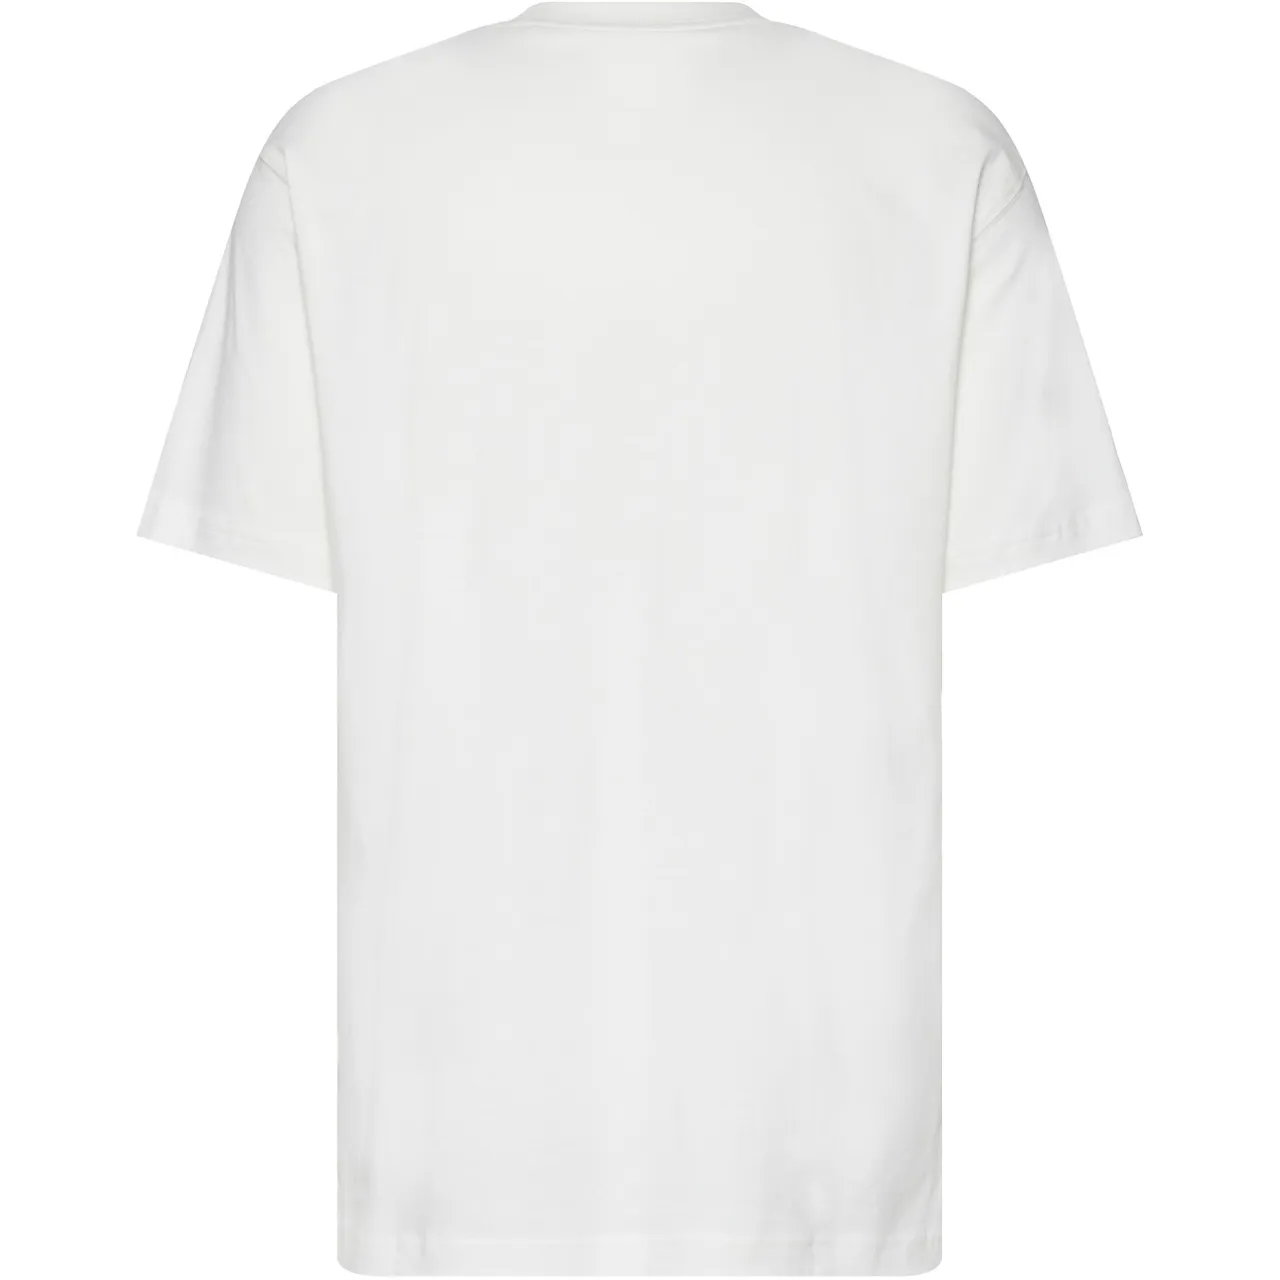 NEW BALANCE T-Shirt Herren